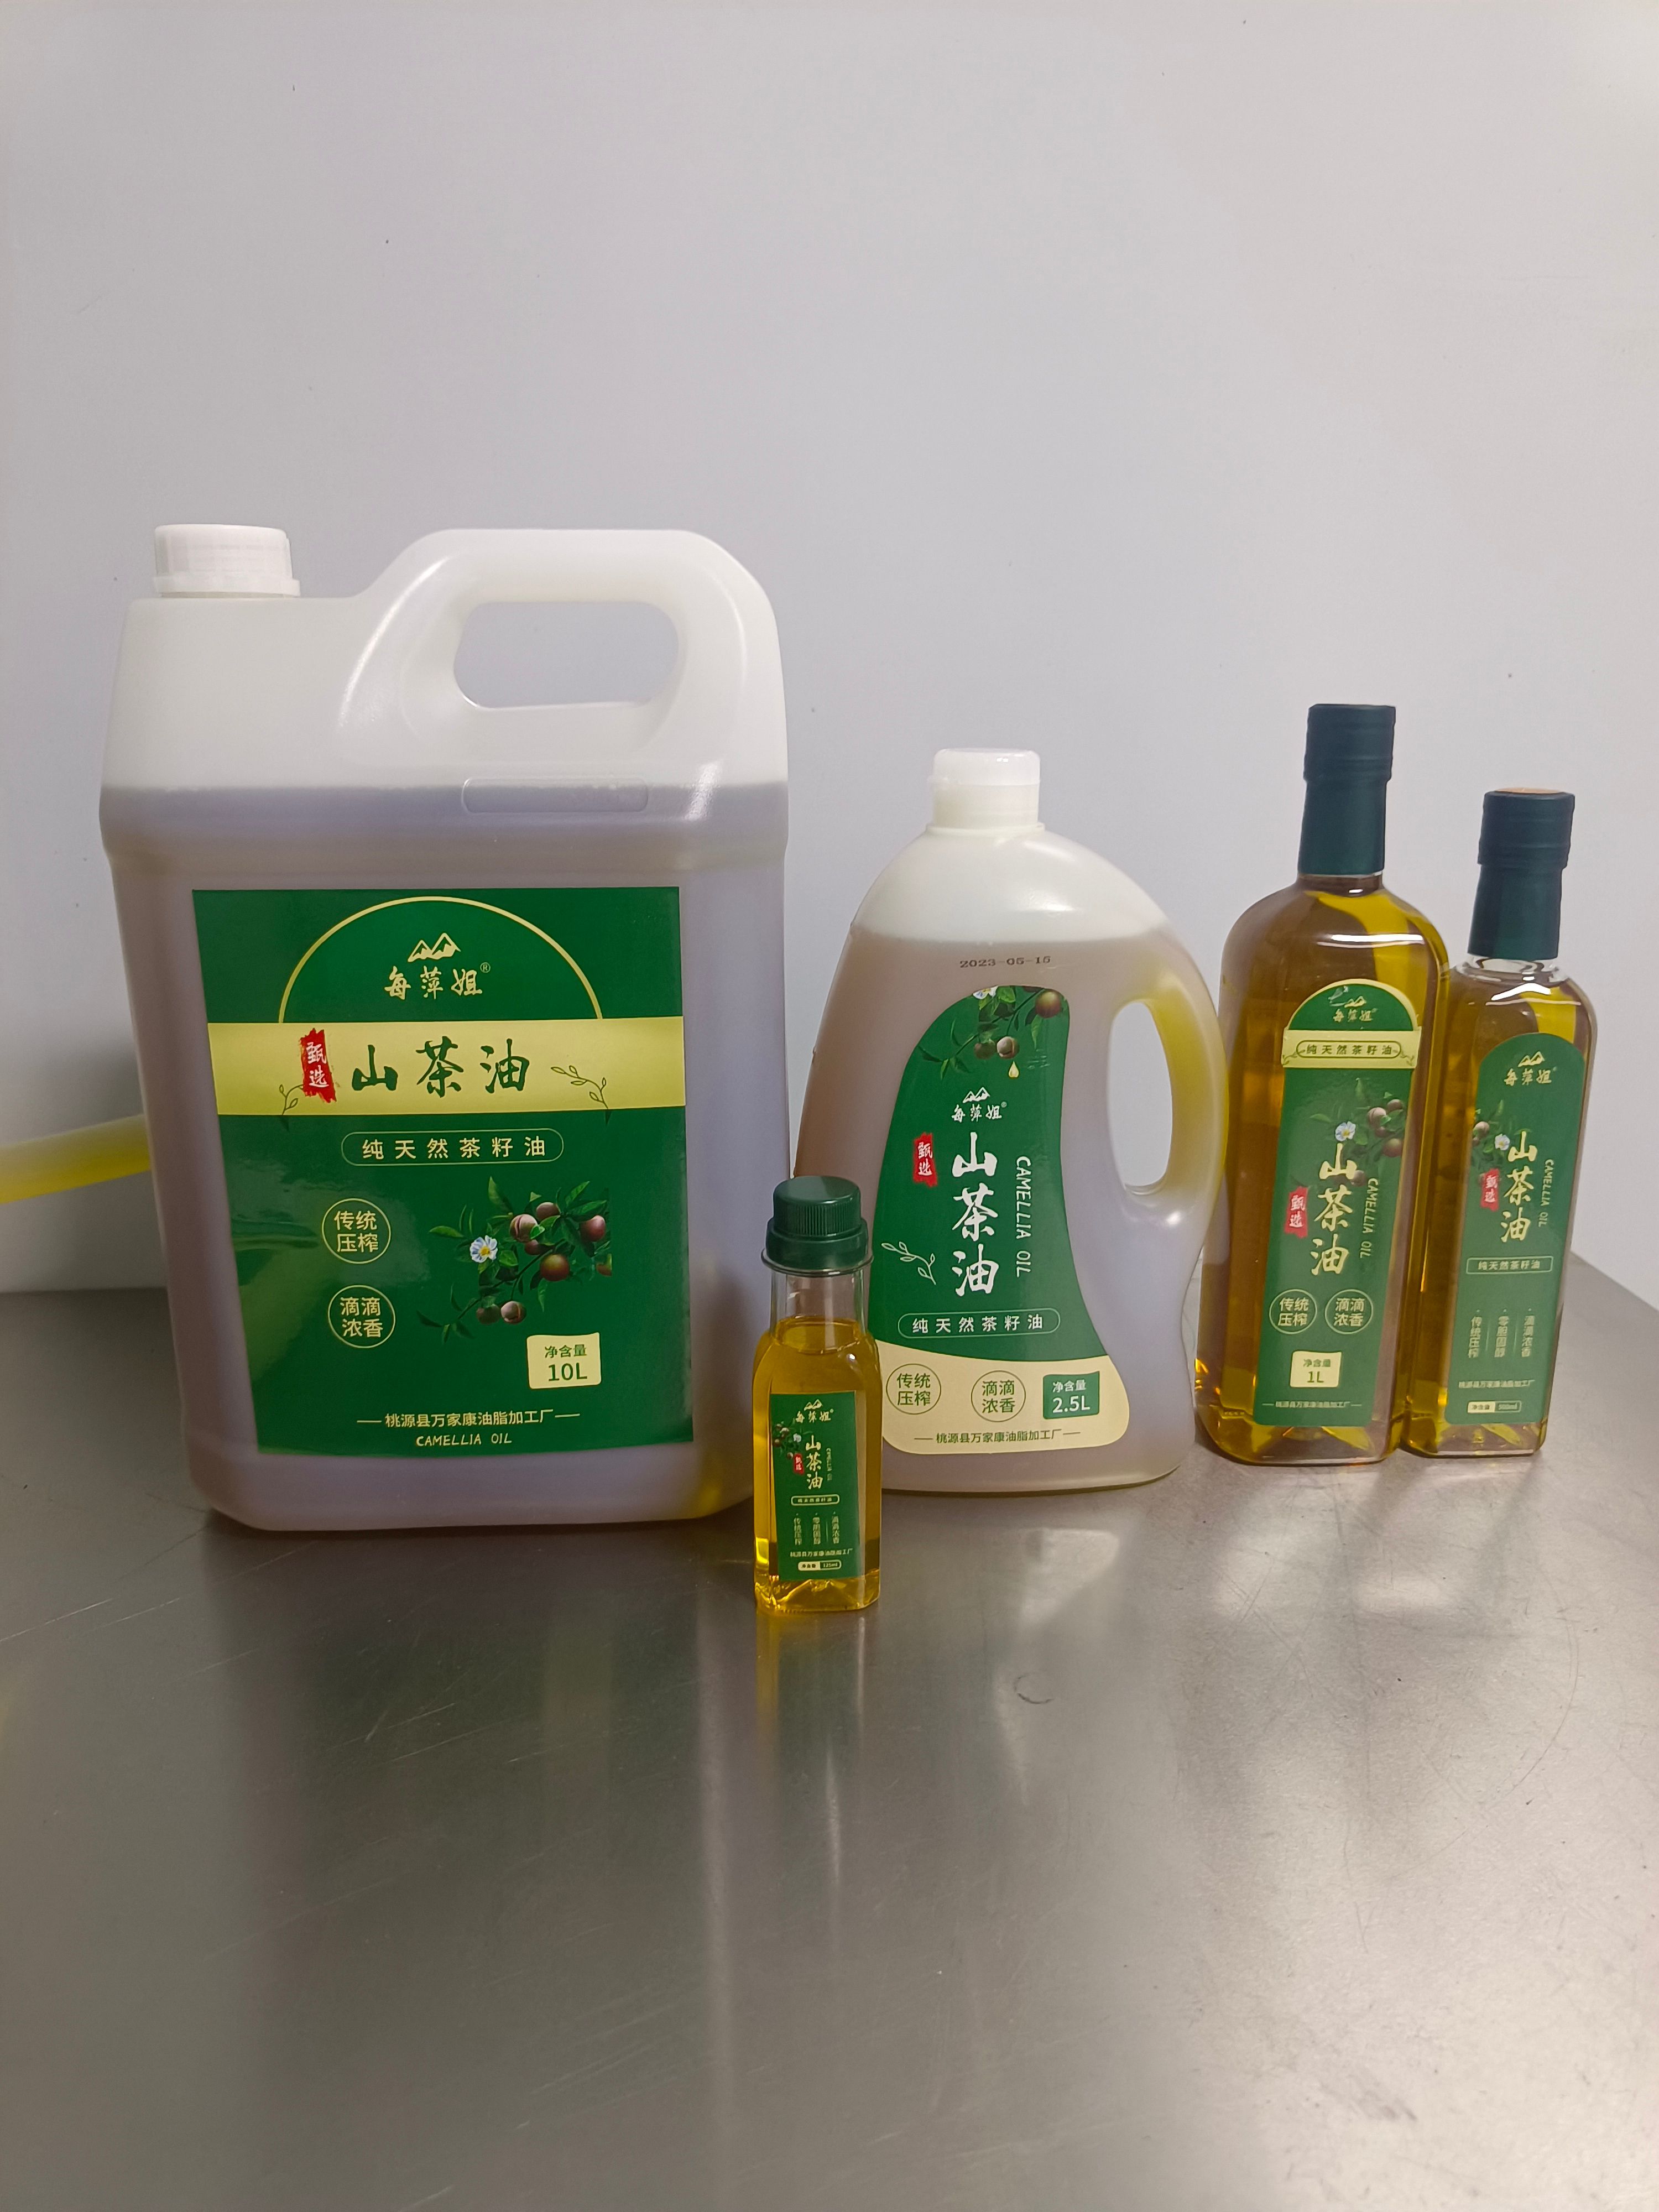 桃源县自己油厂纯原香头道物理压榨纯野生山茶籽油